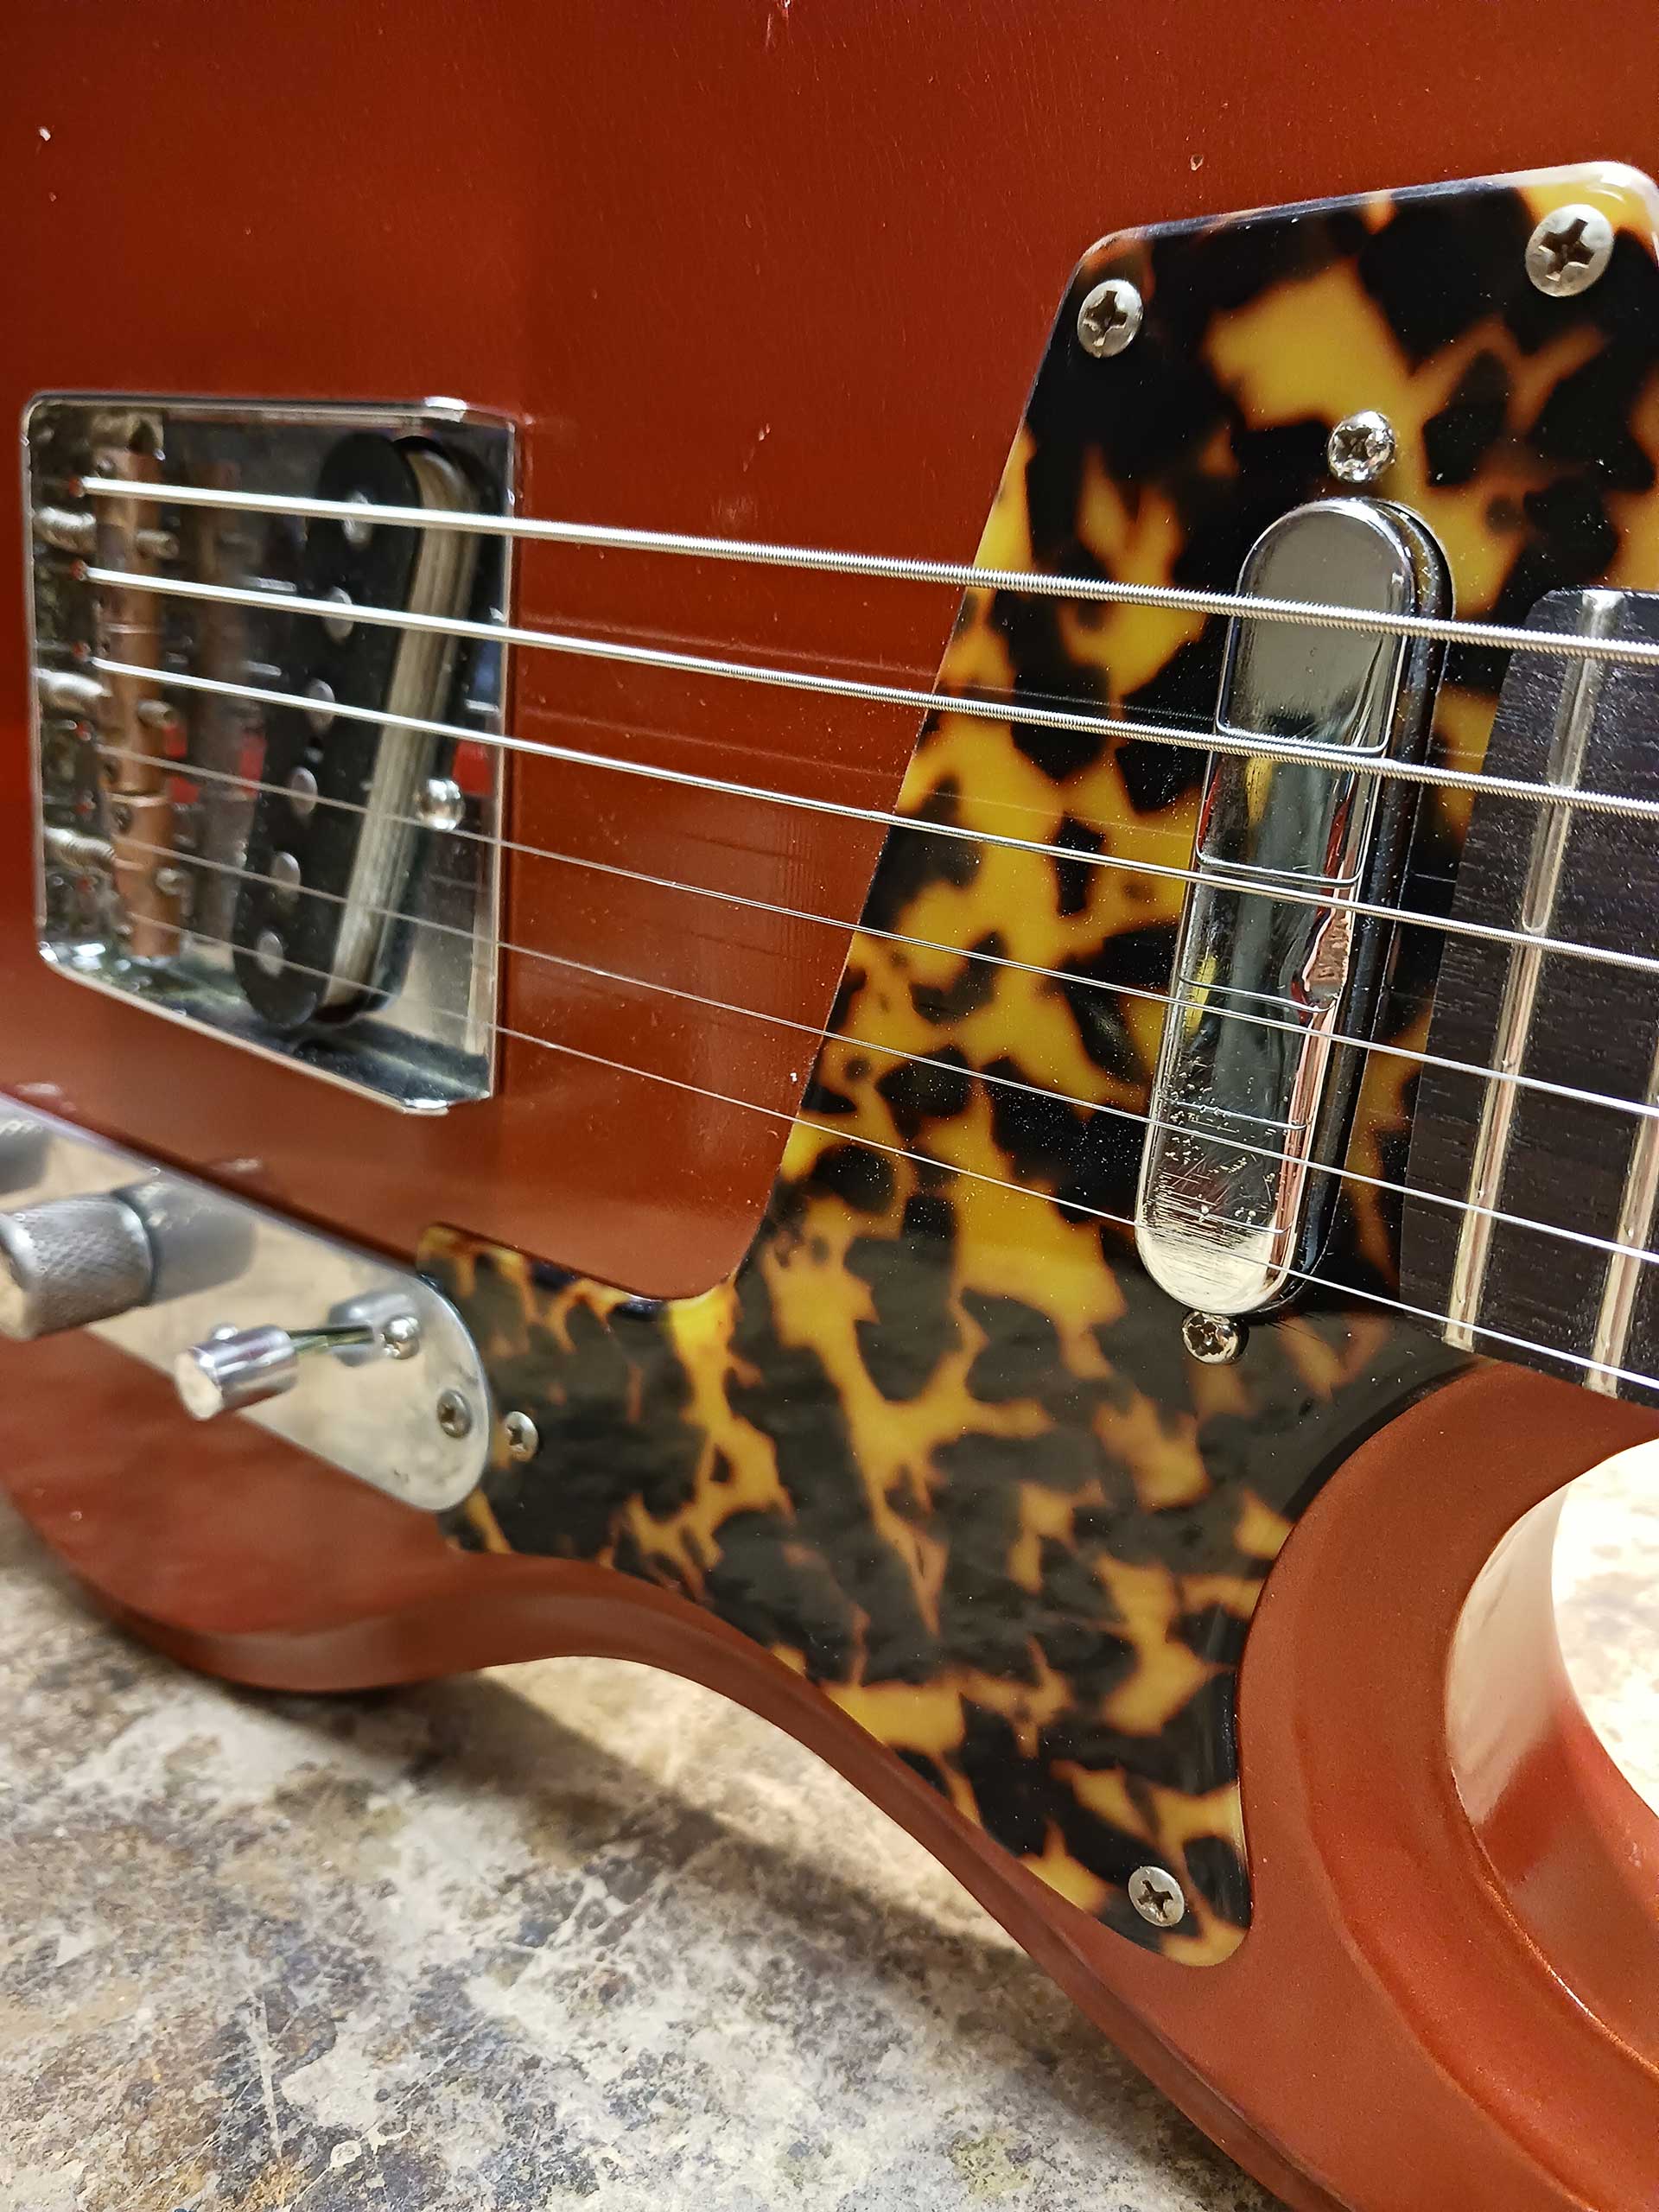 Roadrunner Federal Mod T Copper – Roadrunner Guitars